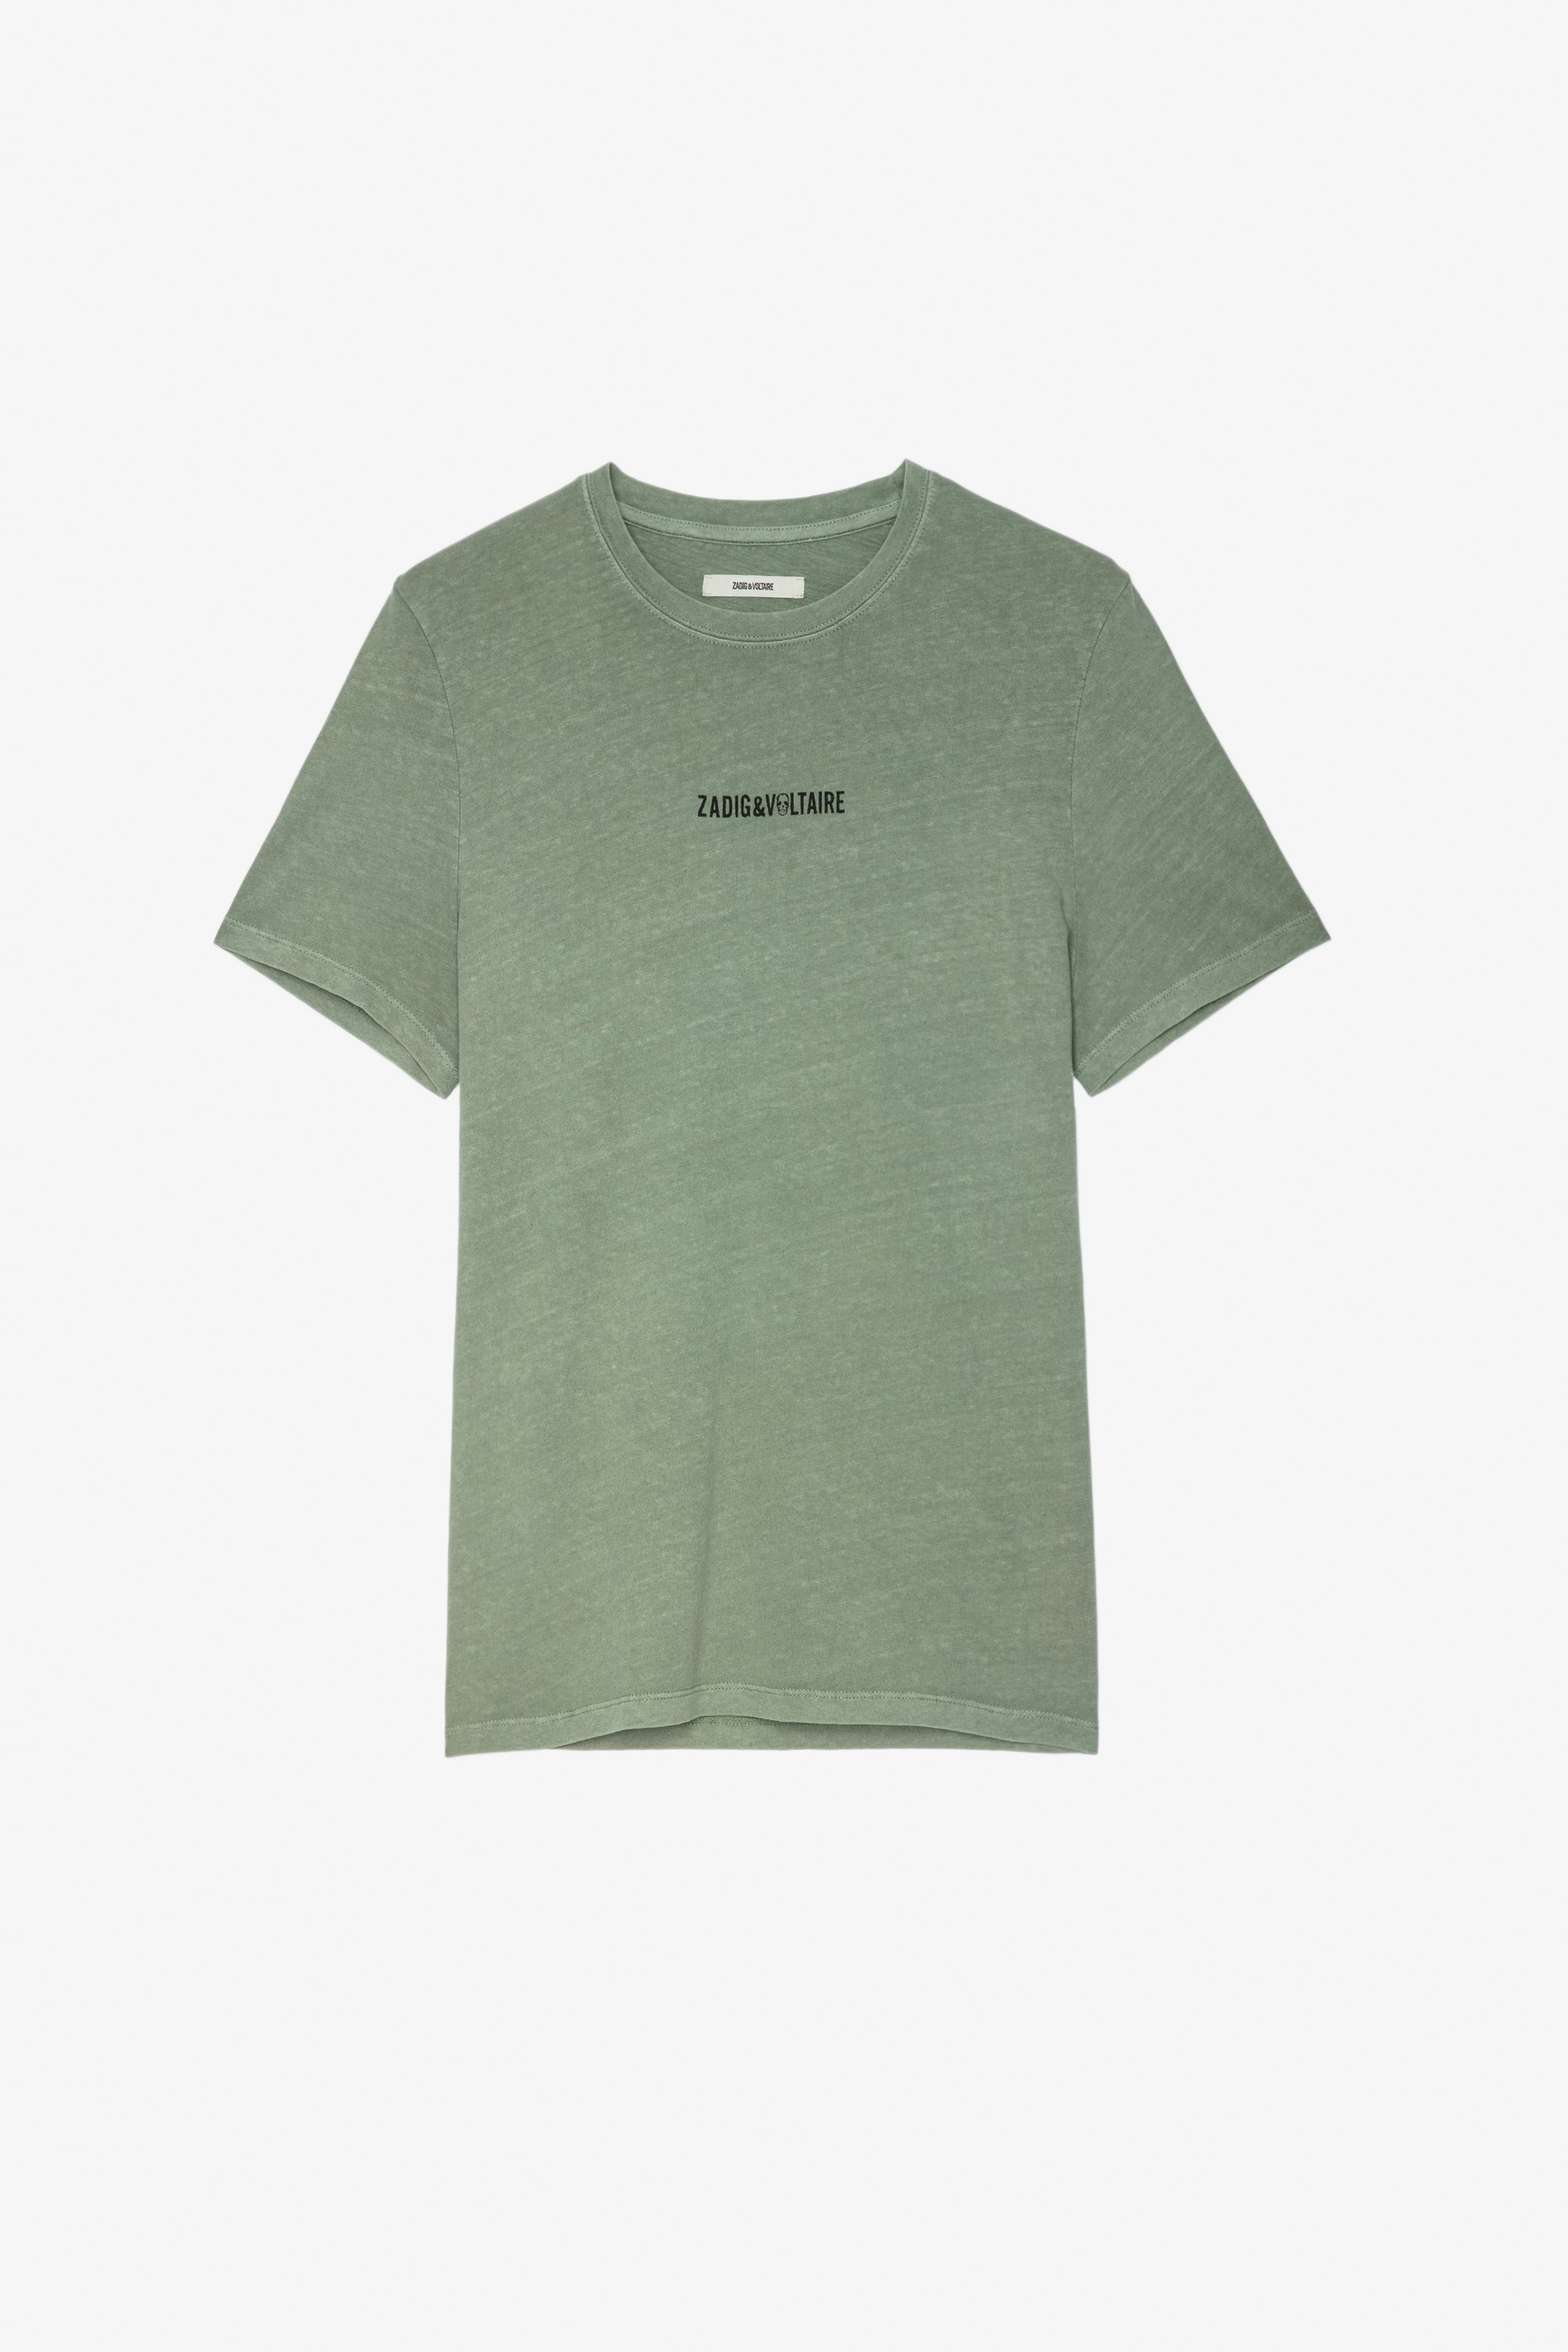 Camiseta Ted Camiseta verde de algodón para hombre con firma ZV en la parte delantera y mensaje «Hédoniste» en la espalda